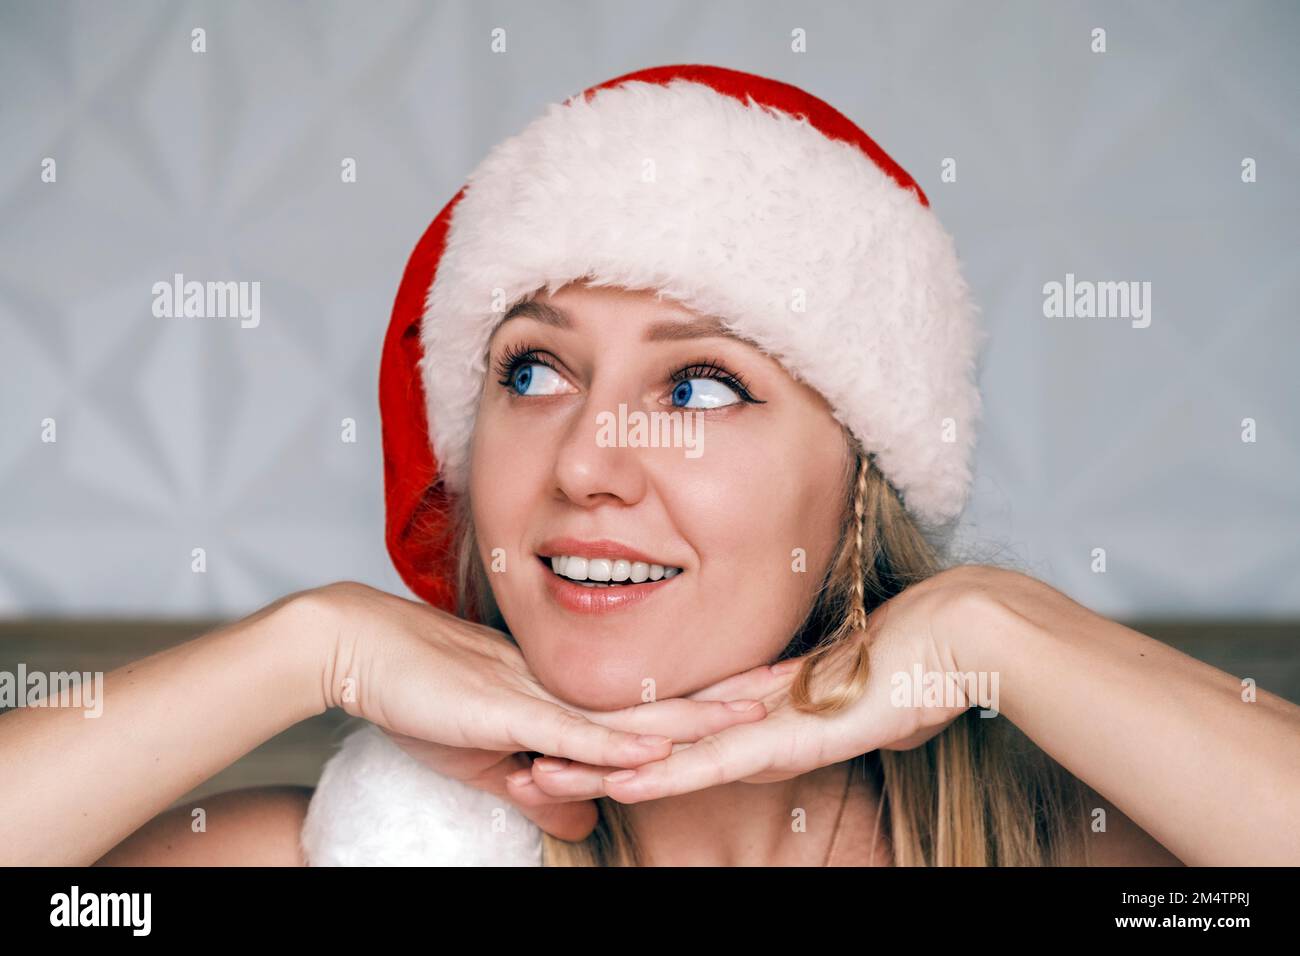 Sorridente Santa ragazza che indossa cappello rosso sta posando il suo mento su entrambe le mani guardando verso l'alto lato. Ritratto di bella giovane bionda con occhio blu nel cappello di Babbo Natale Foto Stock